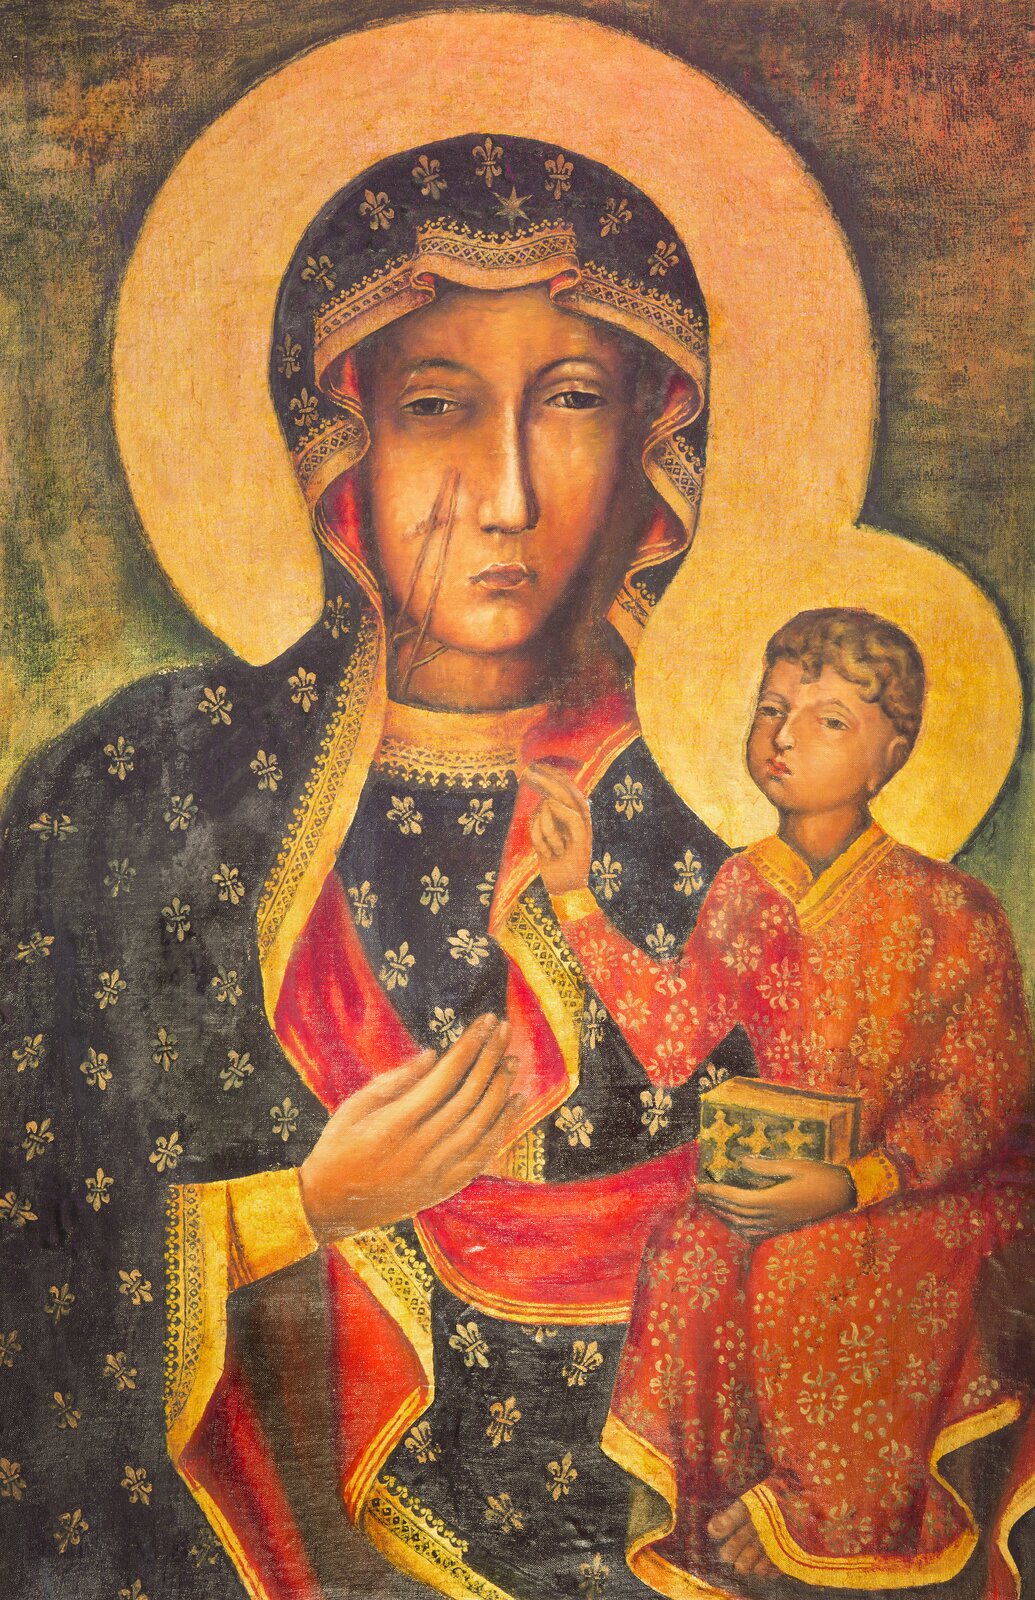 Ilustracja przedstawia obraz „Matki Boskiej Częstochowskiej”. Malowidło ukazuje Madonnę, trzymającą na ręku małego Chrystusa. Twarze obydwu postaci są ciemne i bardzo poważne, smutne. Na twarzy Maryi dwie blizny. Matka Boska ubrana jest w ciemną szatę z lilijkami, podszytą czerwienią. Jezus ubrany w czerwoną, wzorzystą szatę, trzyma na kolanach księgę. Głowy matki i syna otoczone są złotymi aureolami.